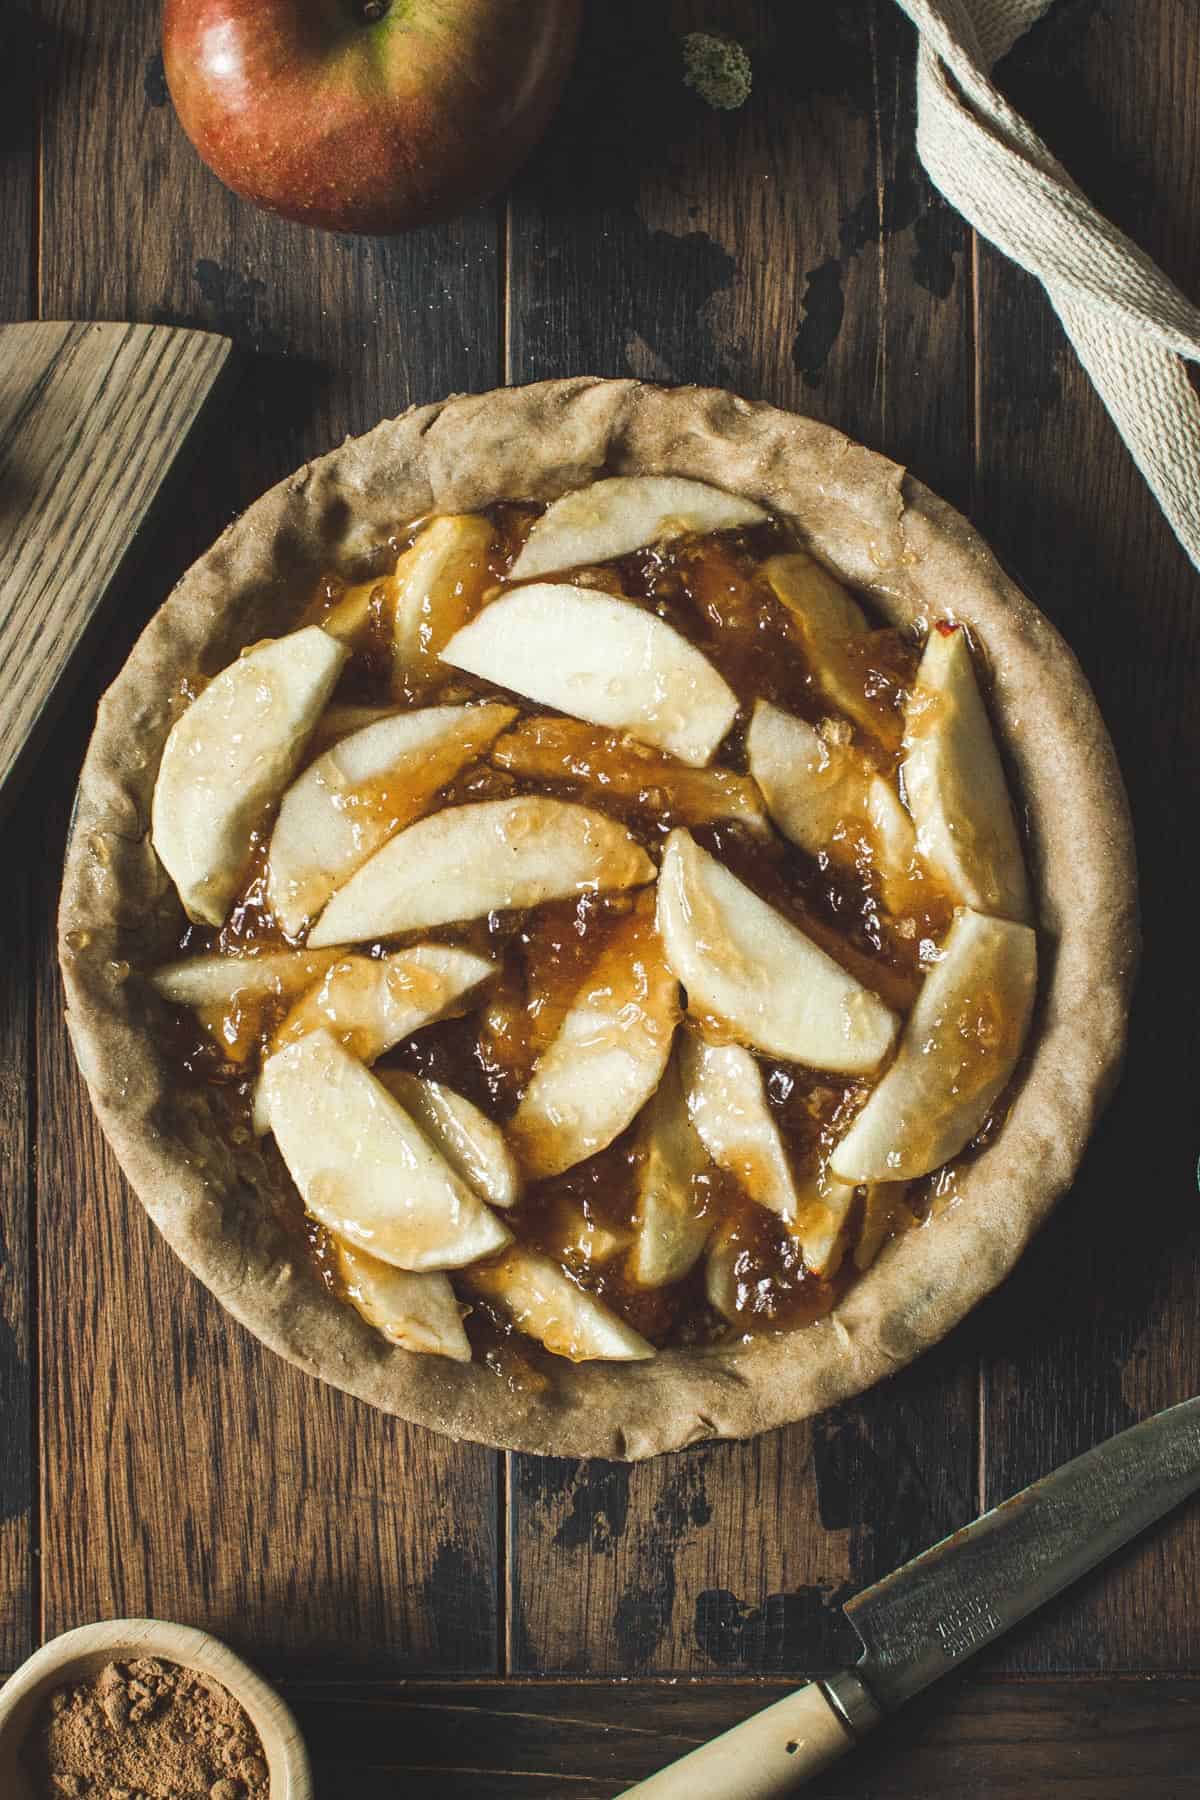 Apple pie filling in a pie crust.